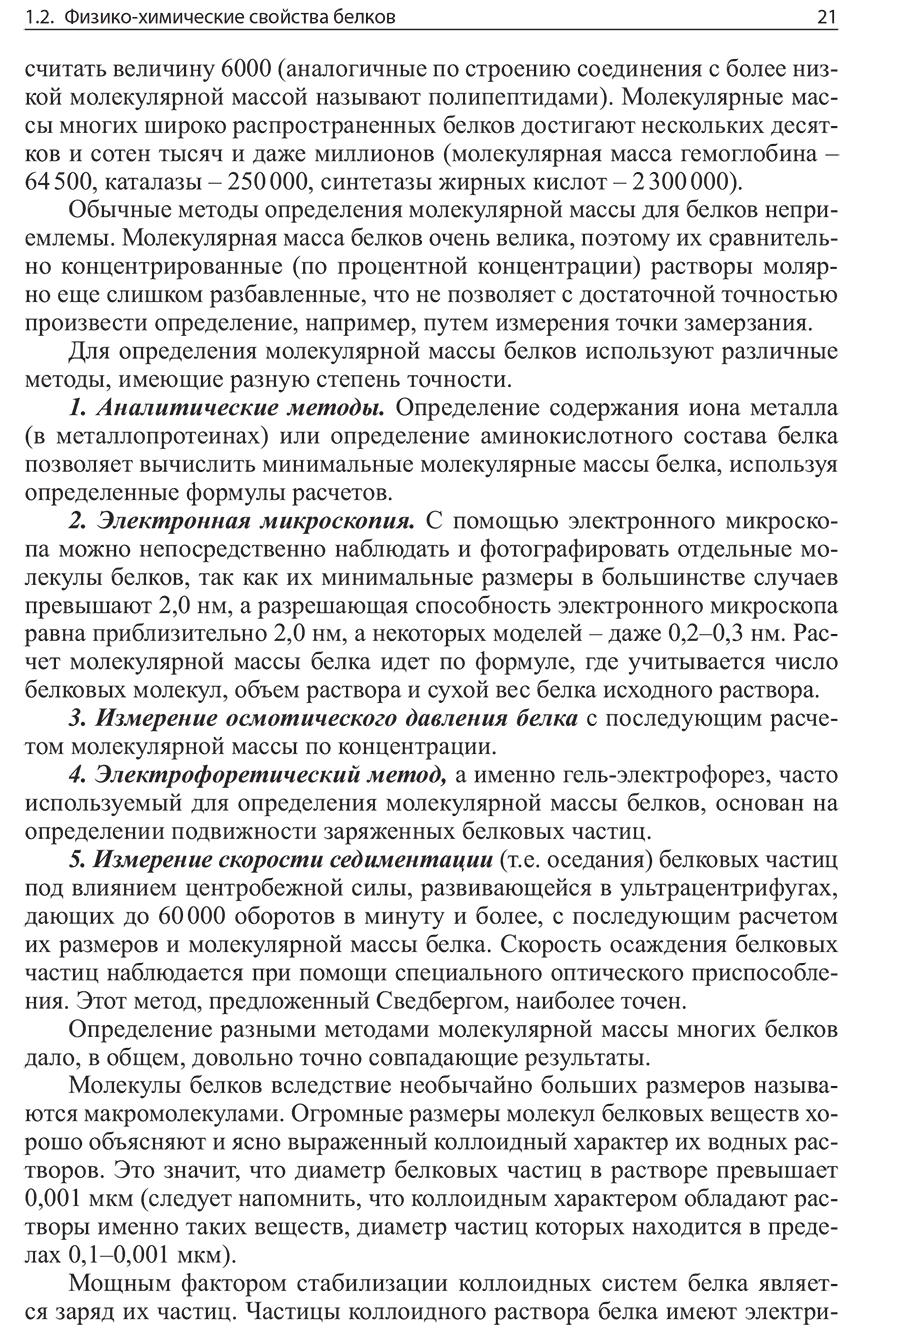 Пример страницы из книги "Биологическая химия" - Василенко Ю. К.